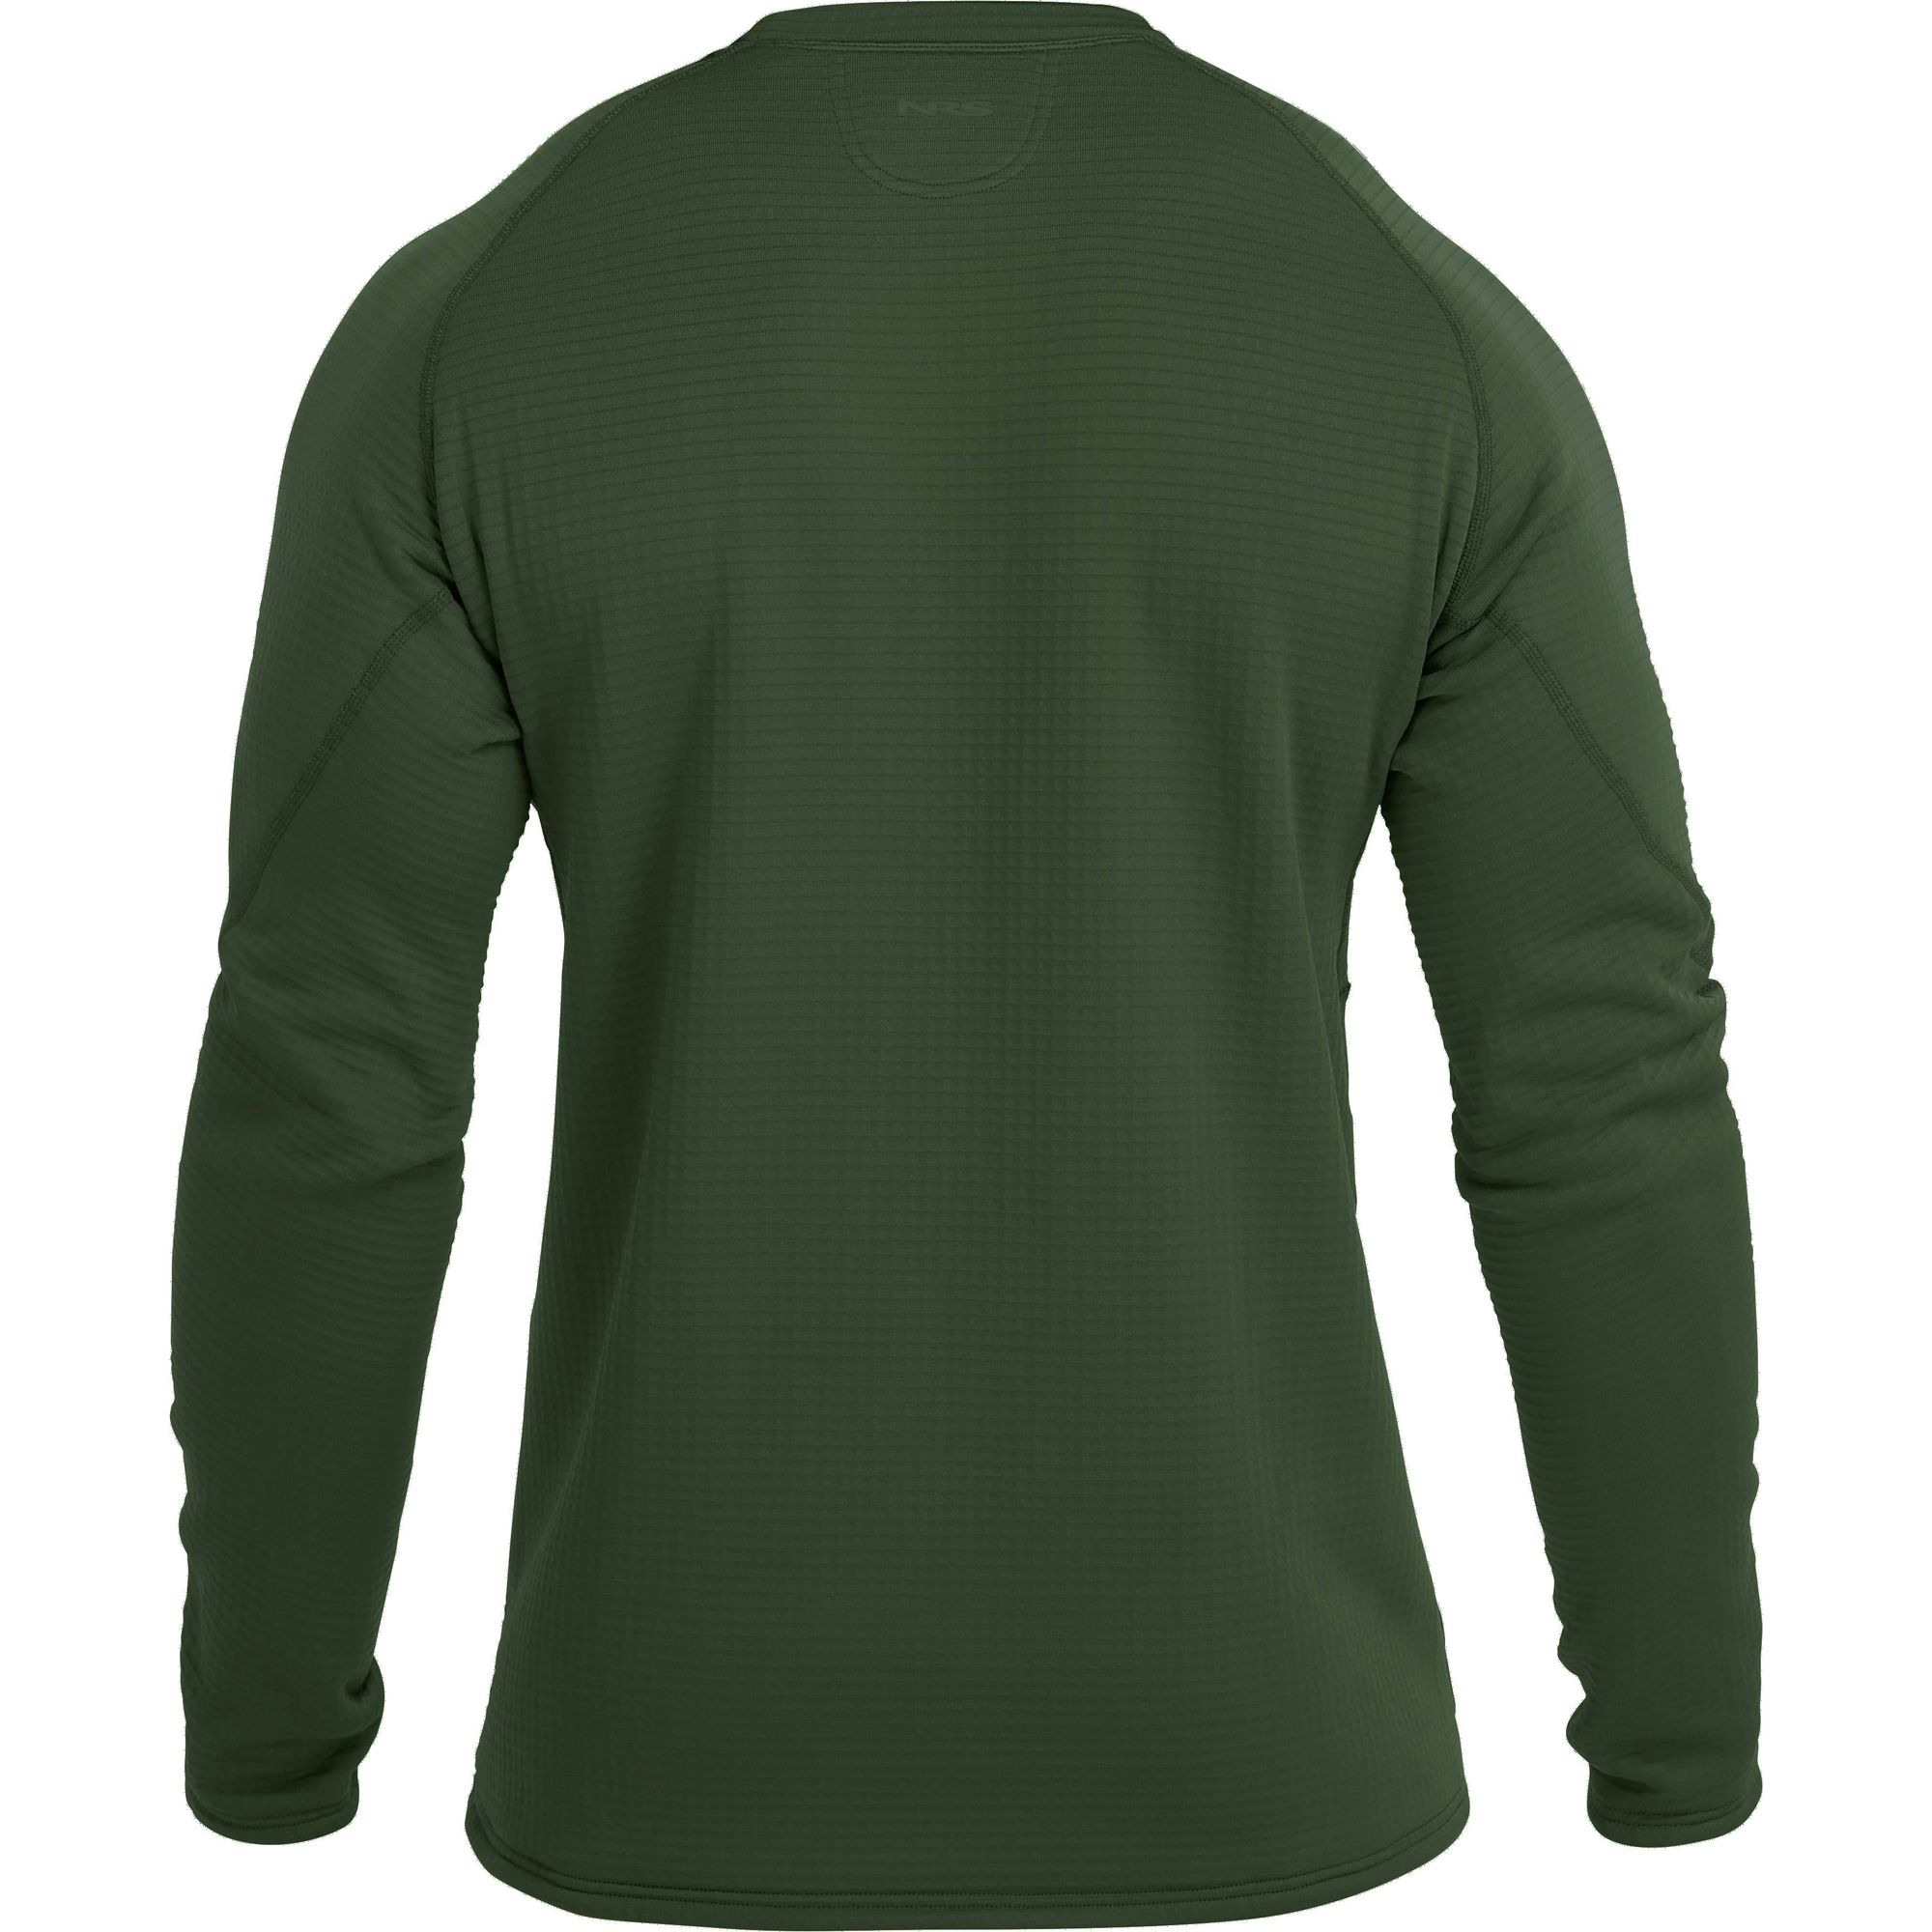 NRS Men's Lightweight Shirt NEW Fleece Pullover Long Sleeve